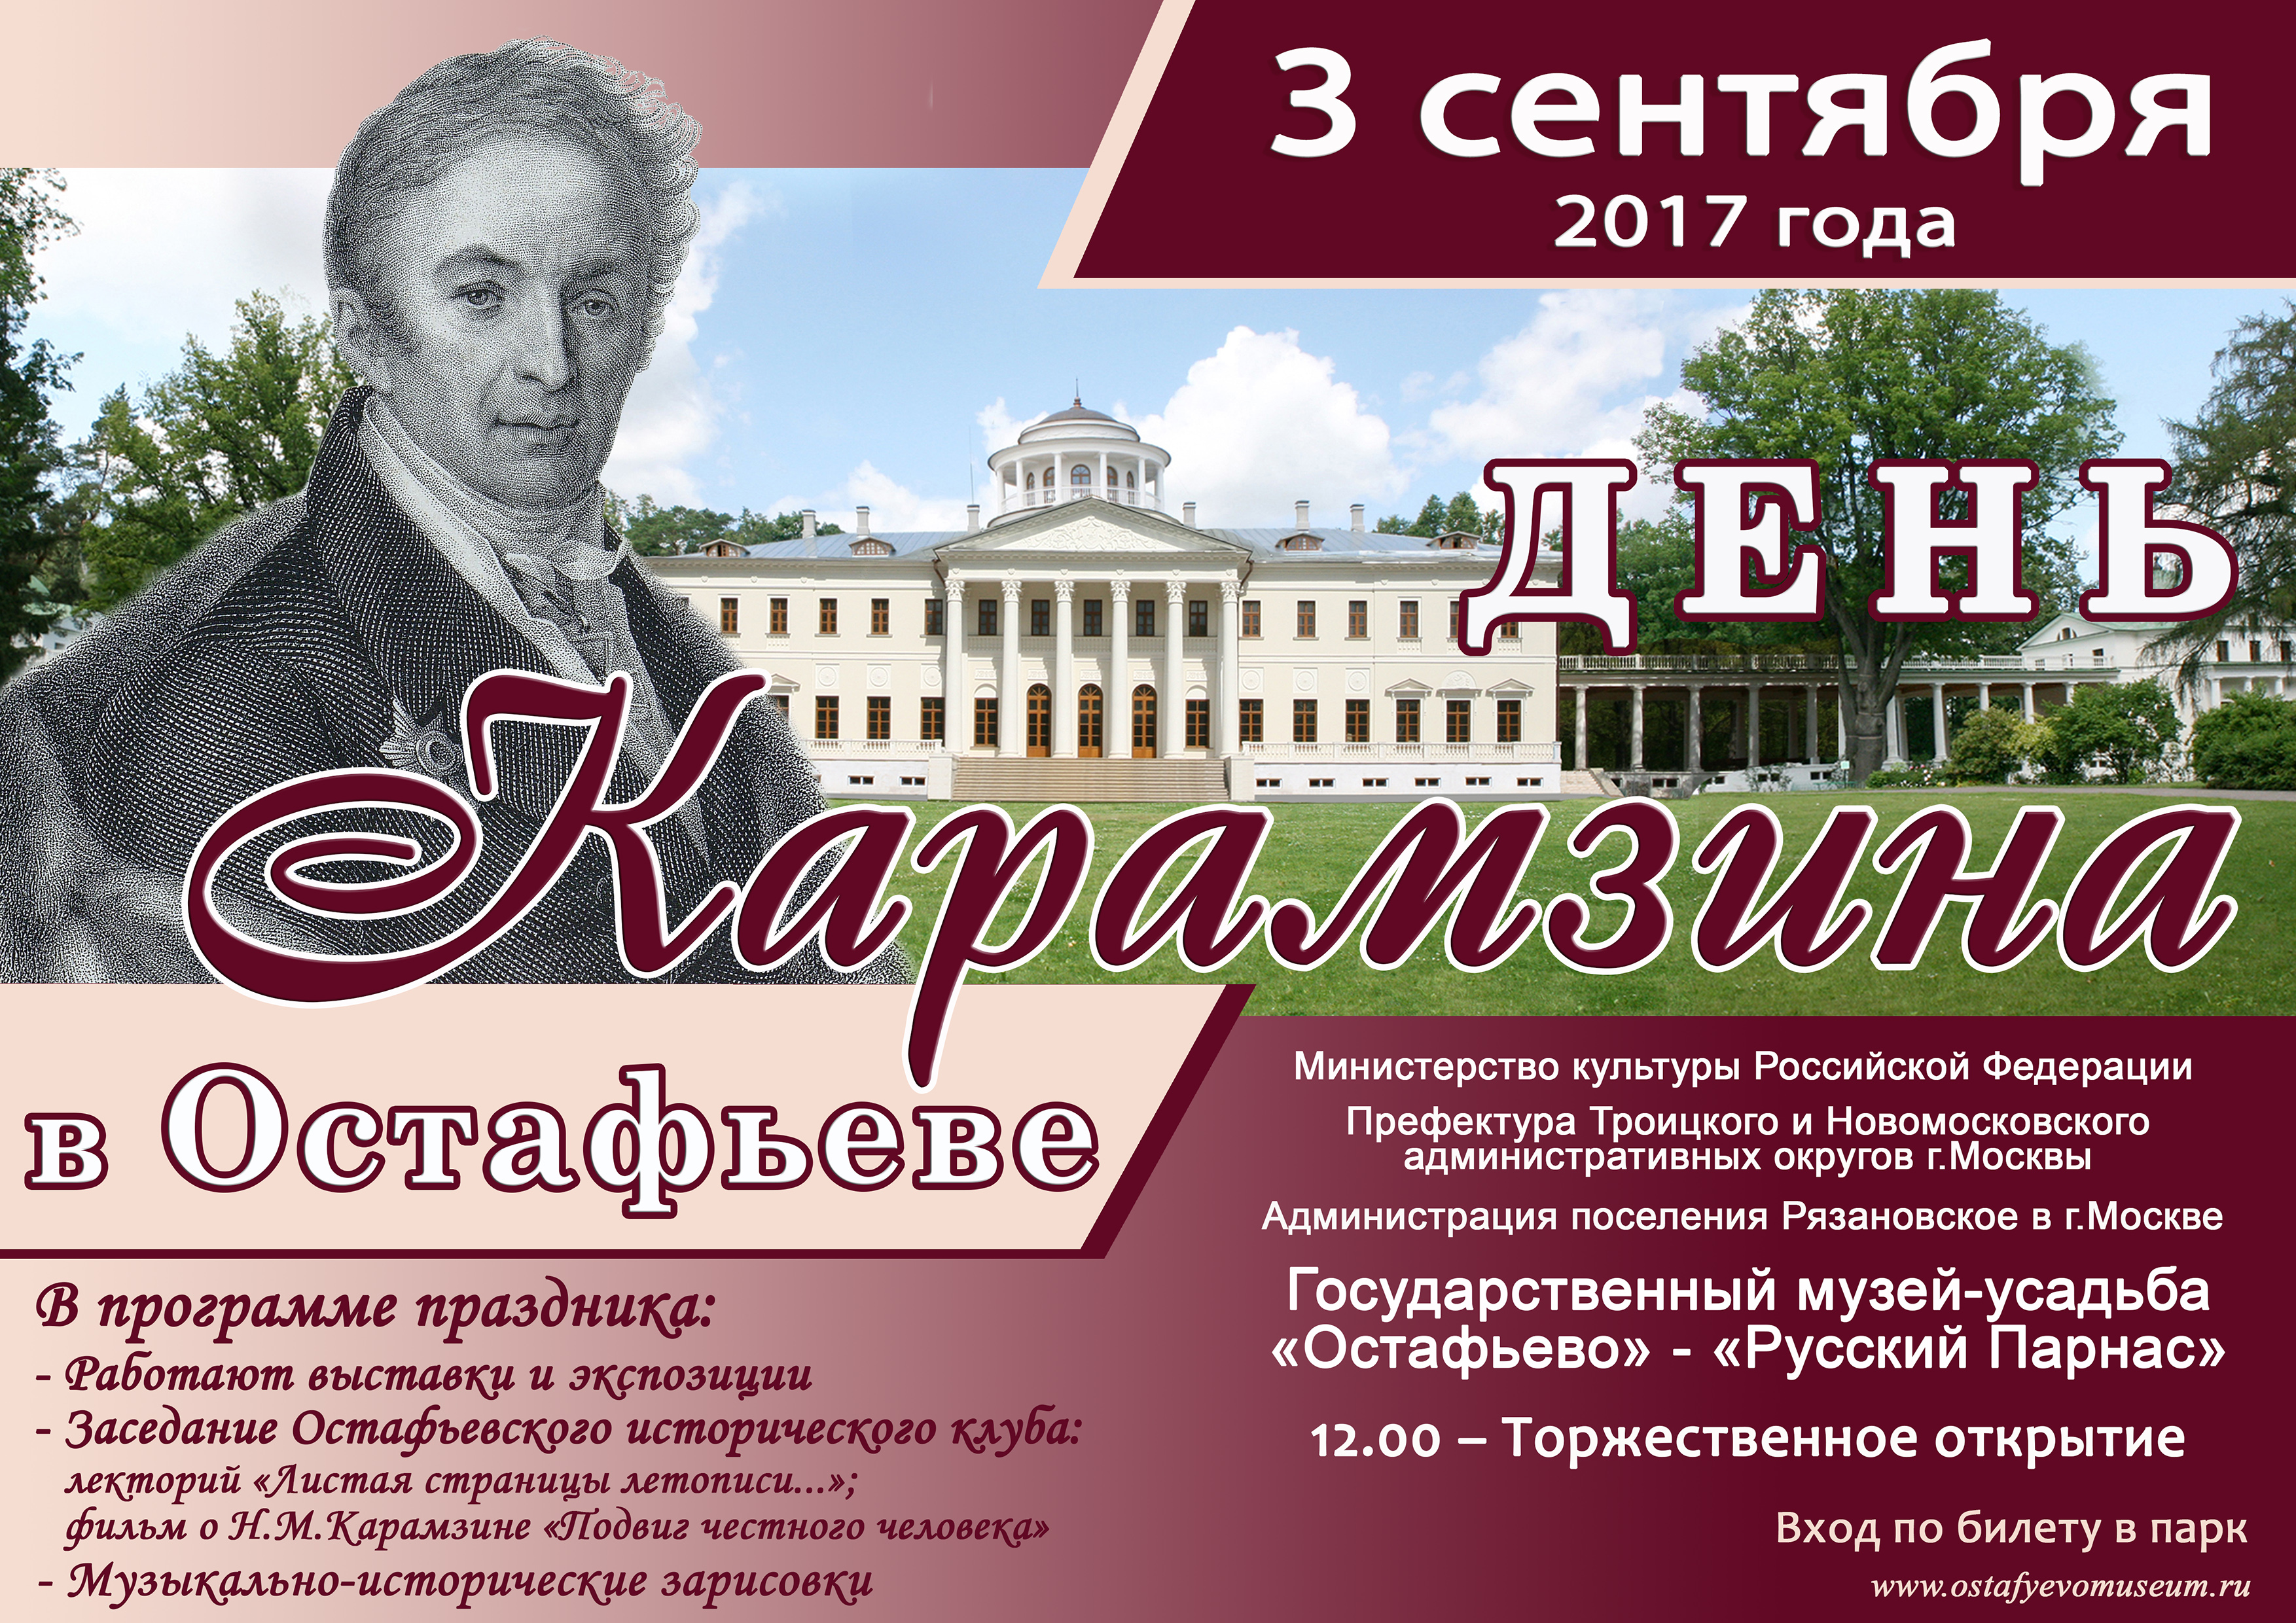 Государственный музей-усадьба «Остафьево» - «Русский Парнас» приглашает 3 сентября 2017 года на День Карамзина